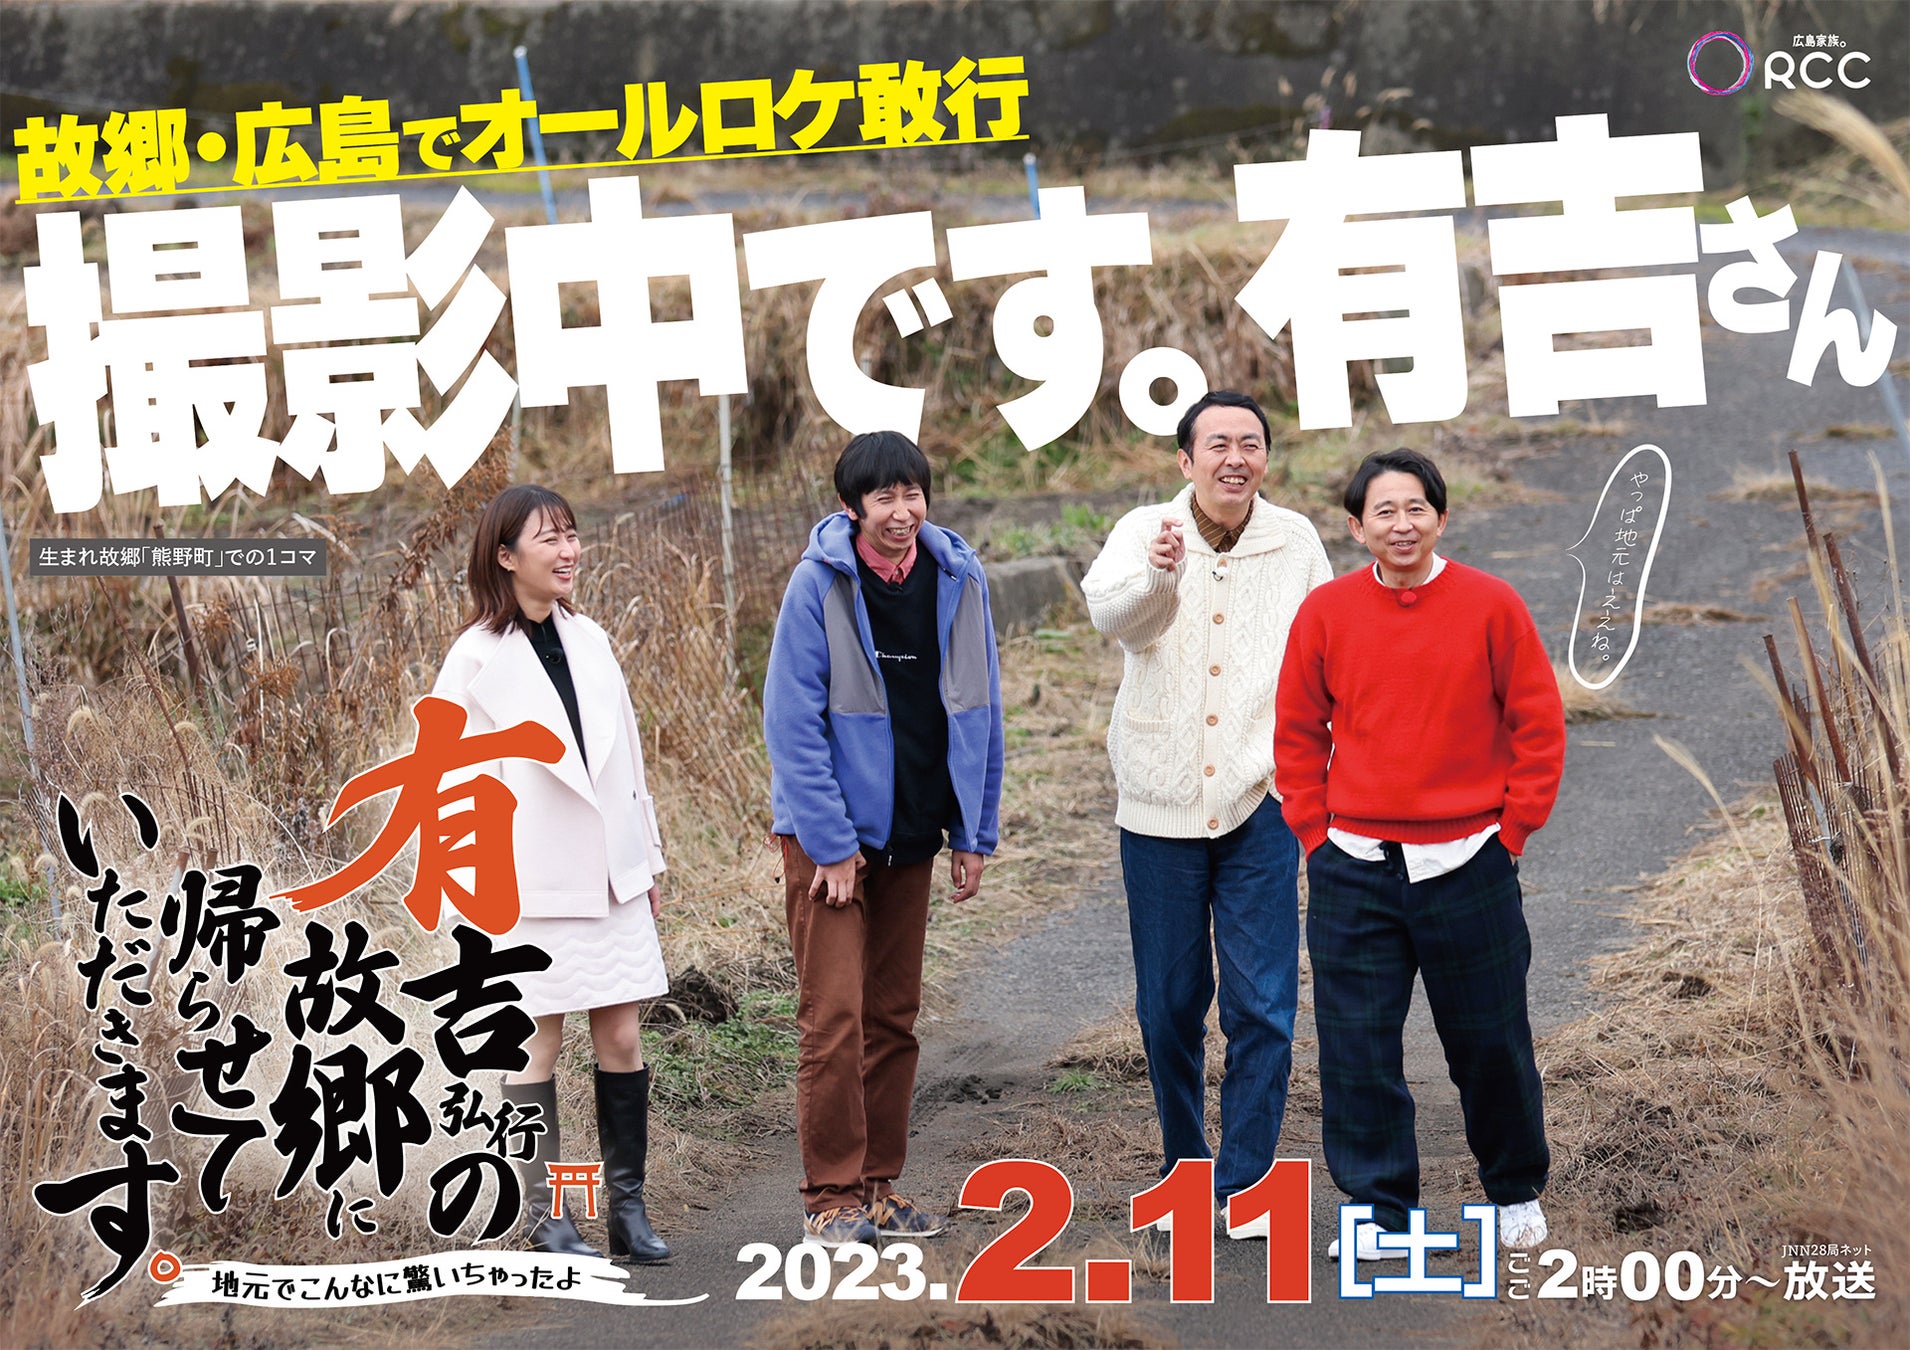 JNN28局ネット番組「有吉弘行の故郷に帰らせていただきます。」 制作・放送のお知らせのサブ画像1